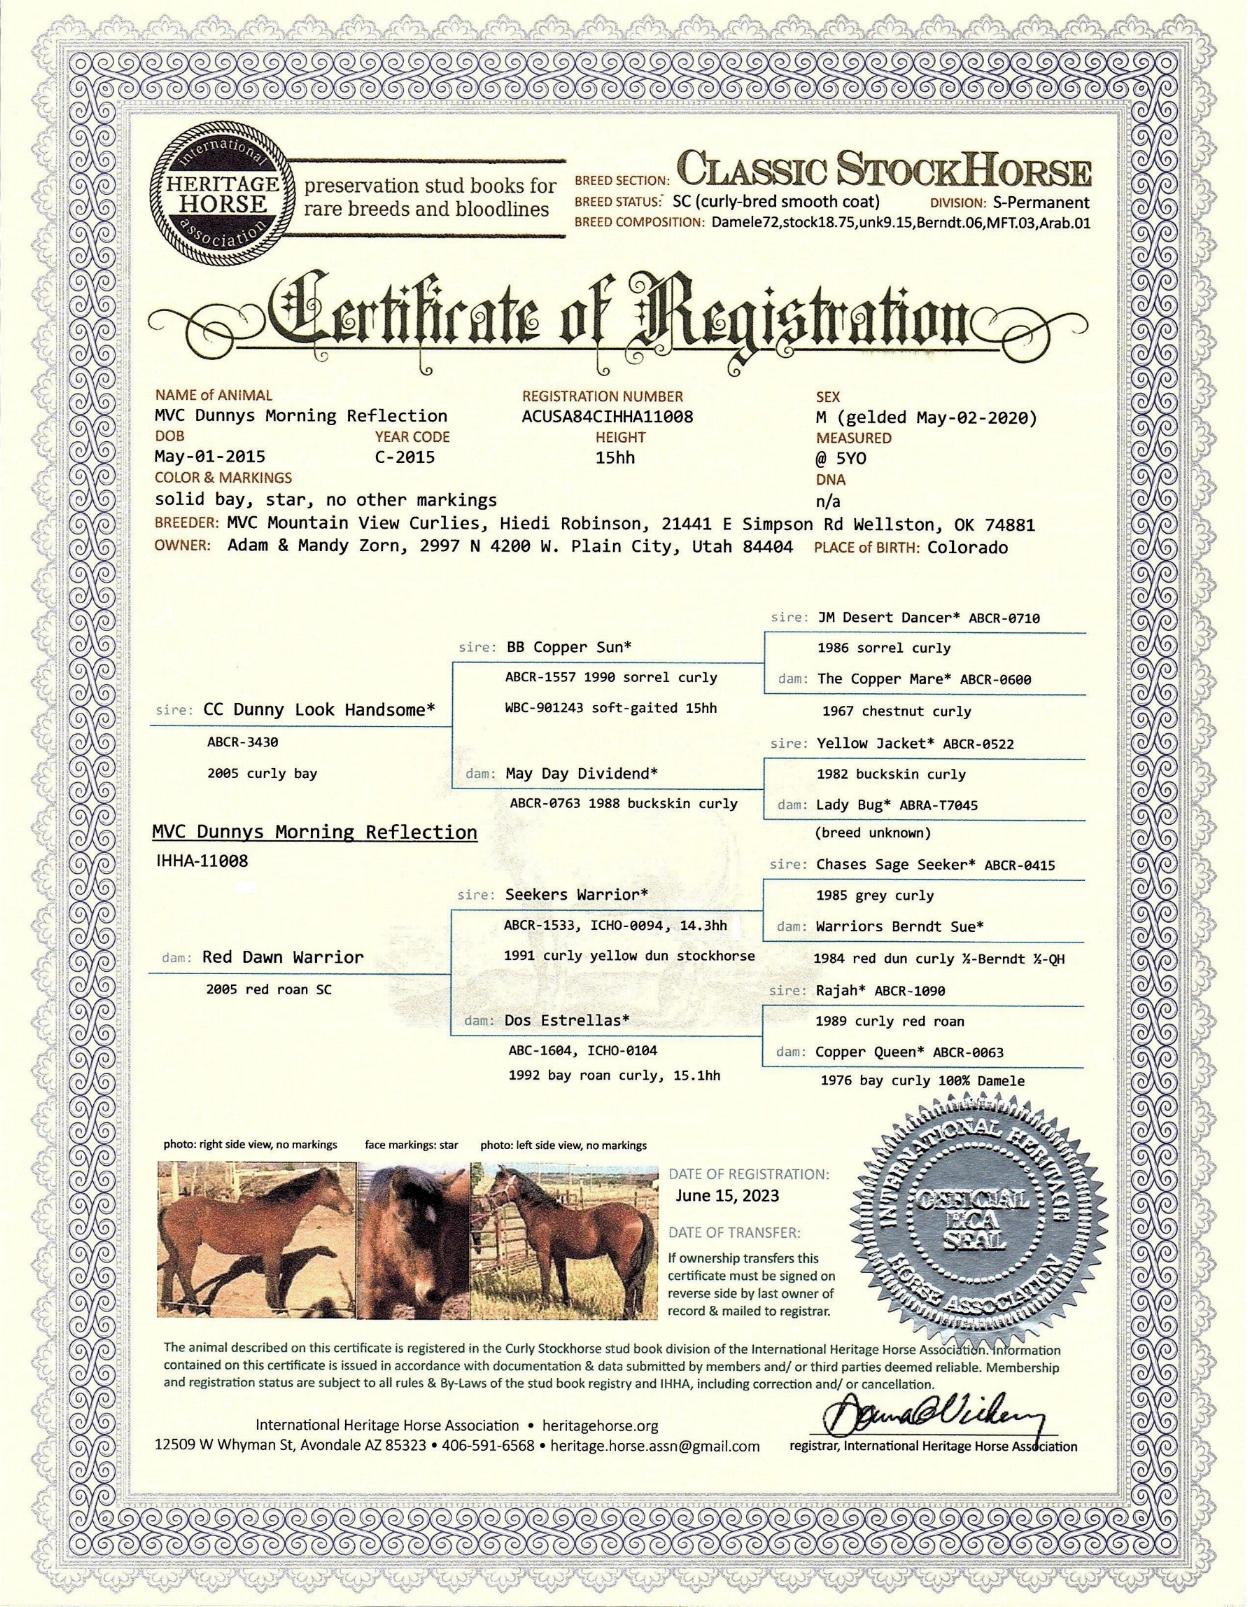 IHHA registration certificate